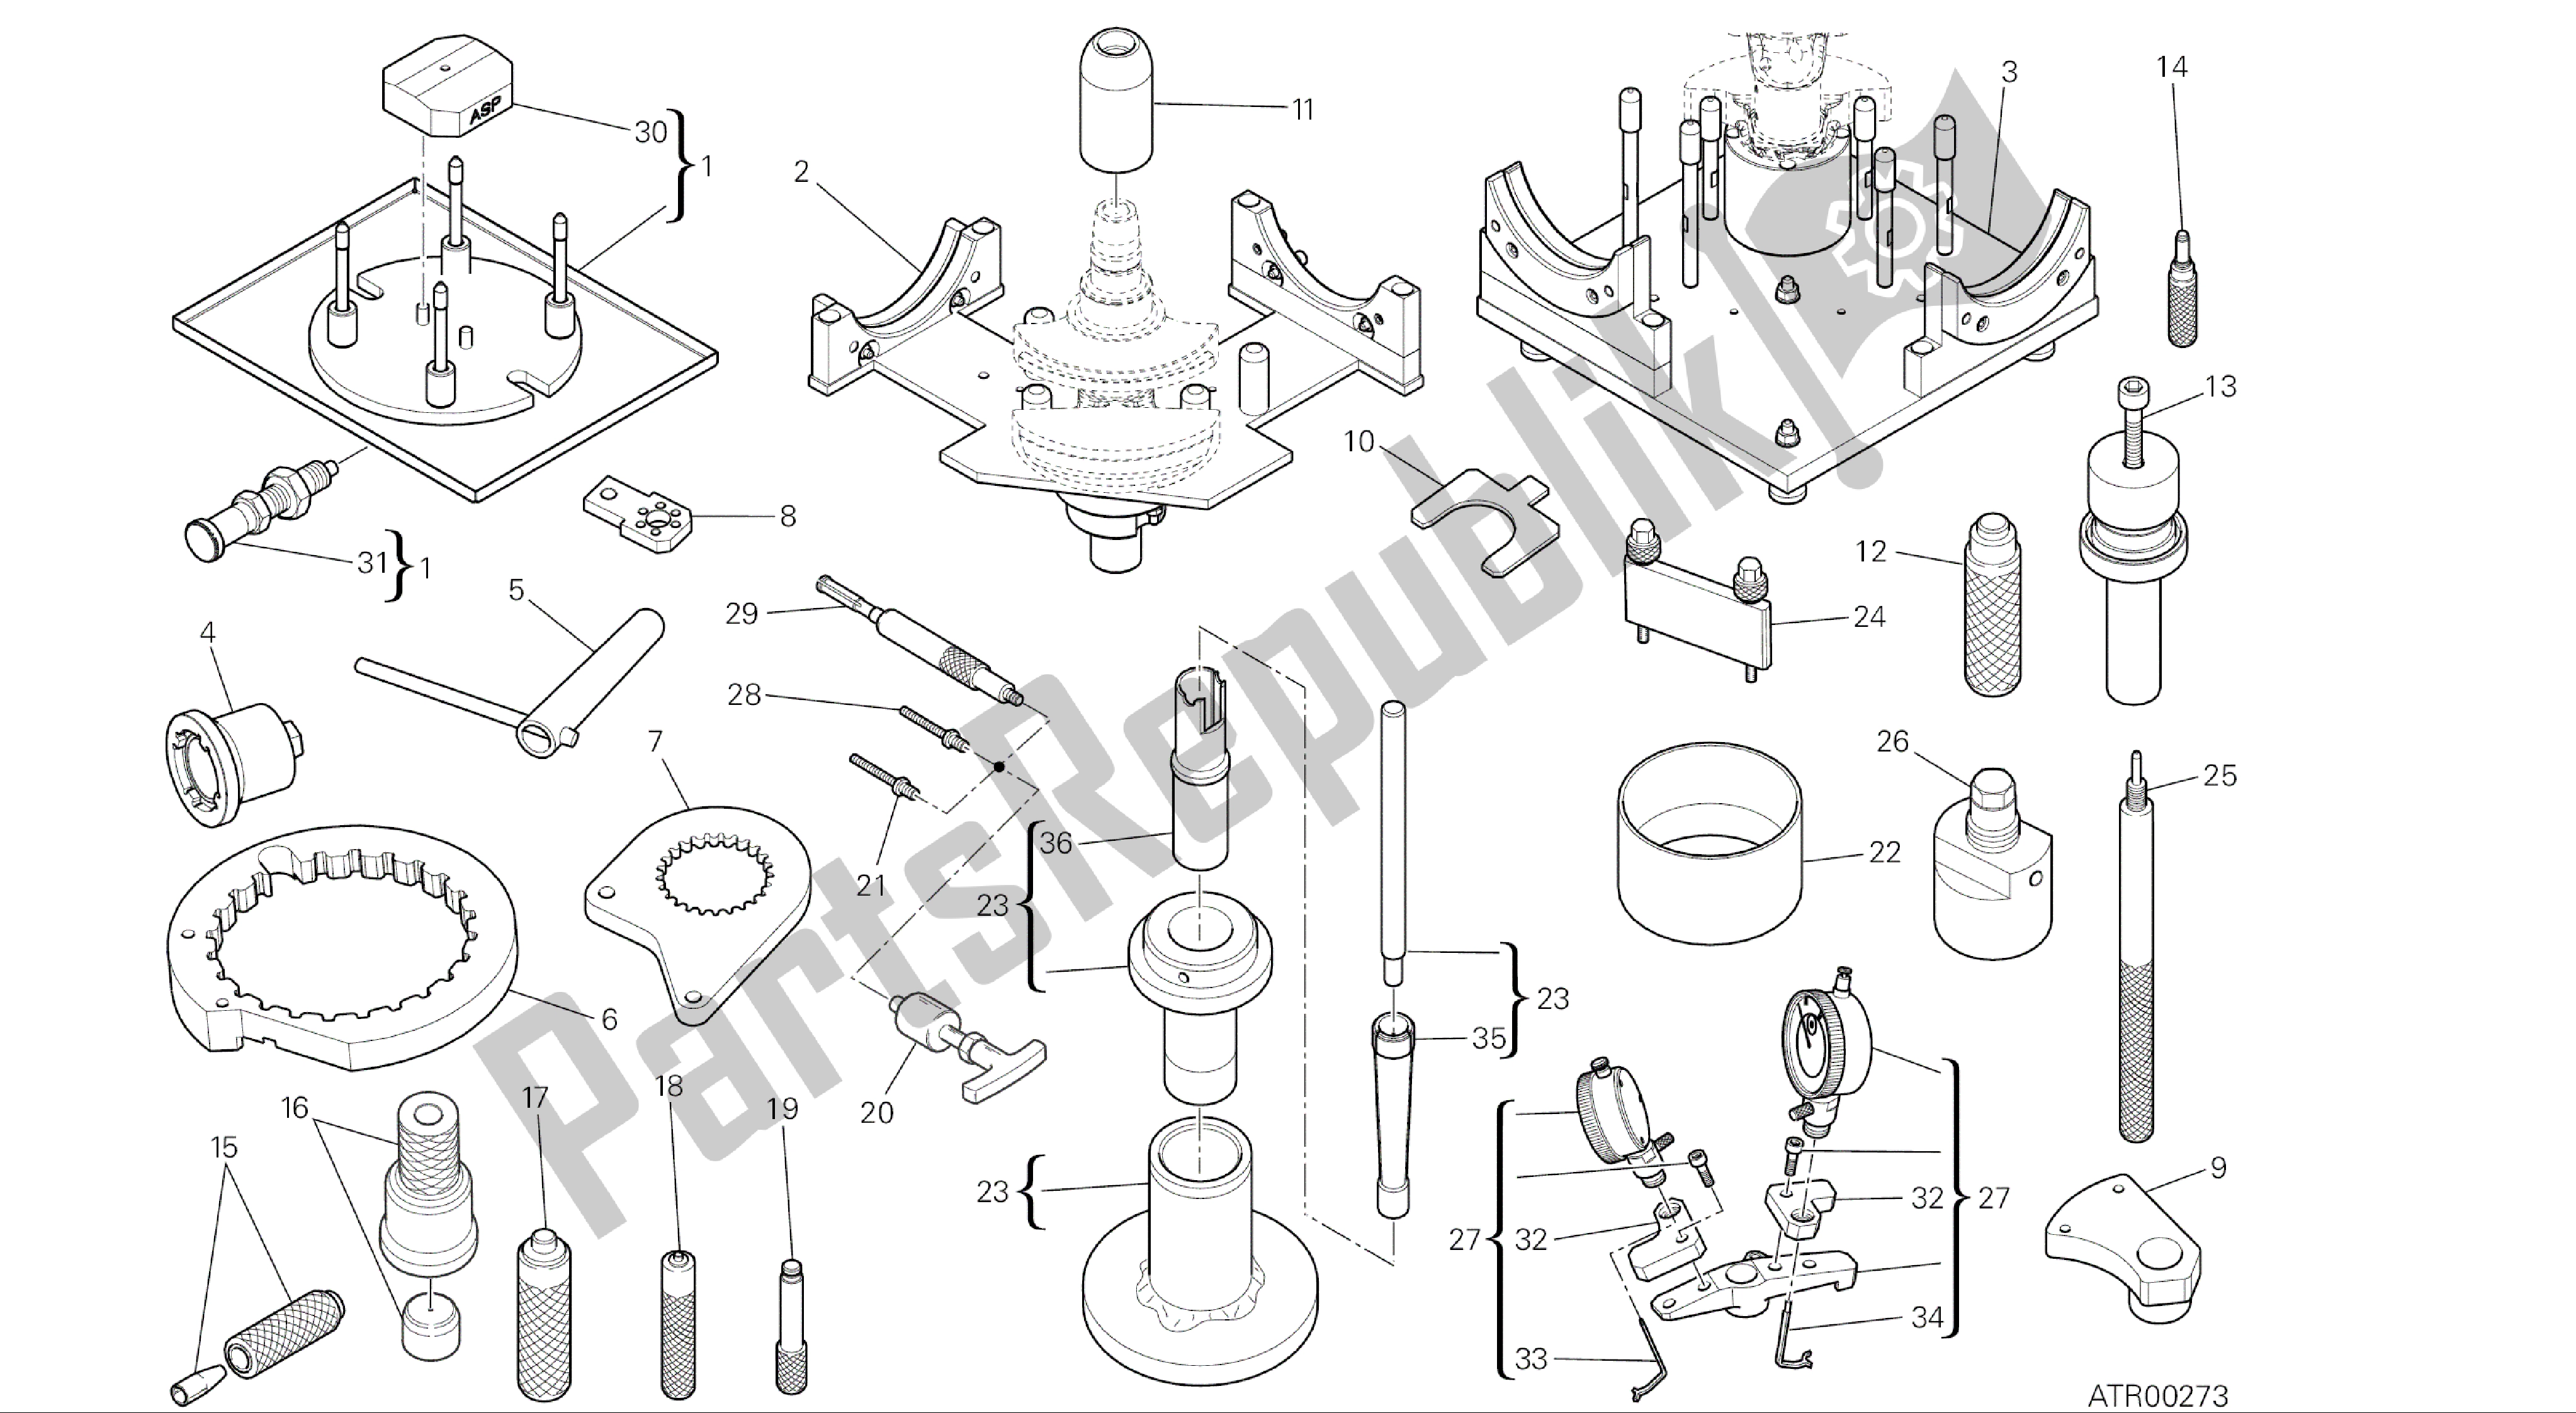 Alle onderdelen voor de Tekening 01a - Werkplaats Service Tools [mod: 1299; Xst: Aus, Eur, Fra, Jap, Twn] Groepstools van de Ducati Panigale ABS 1299 2016